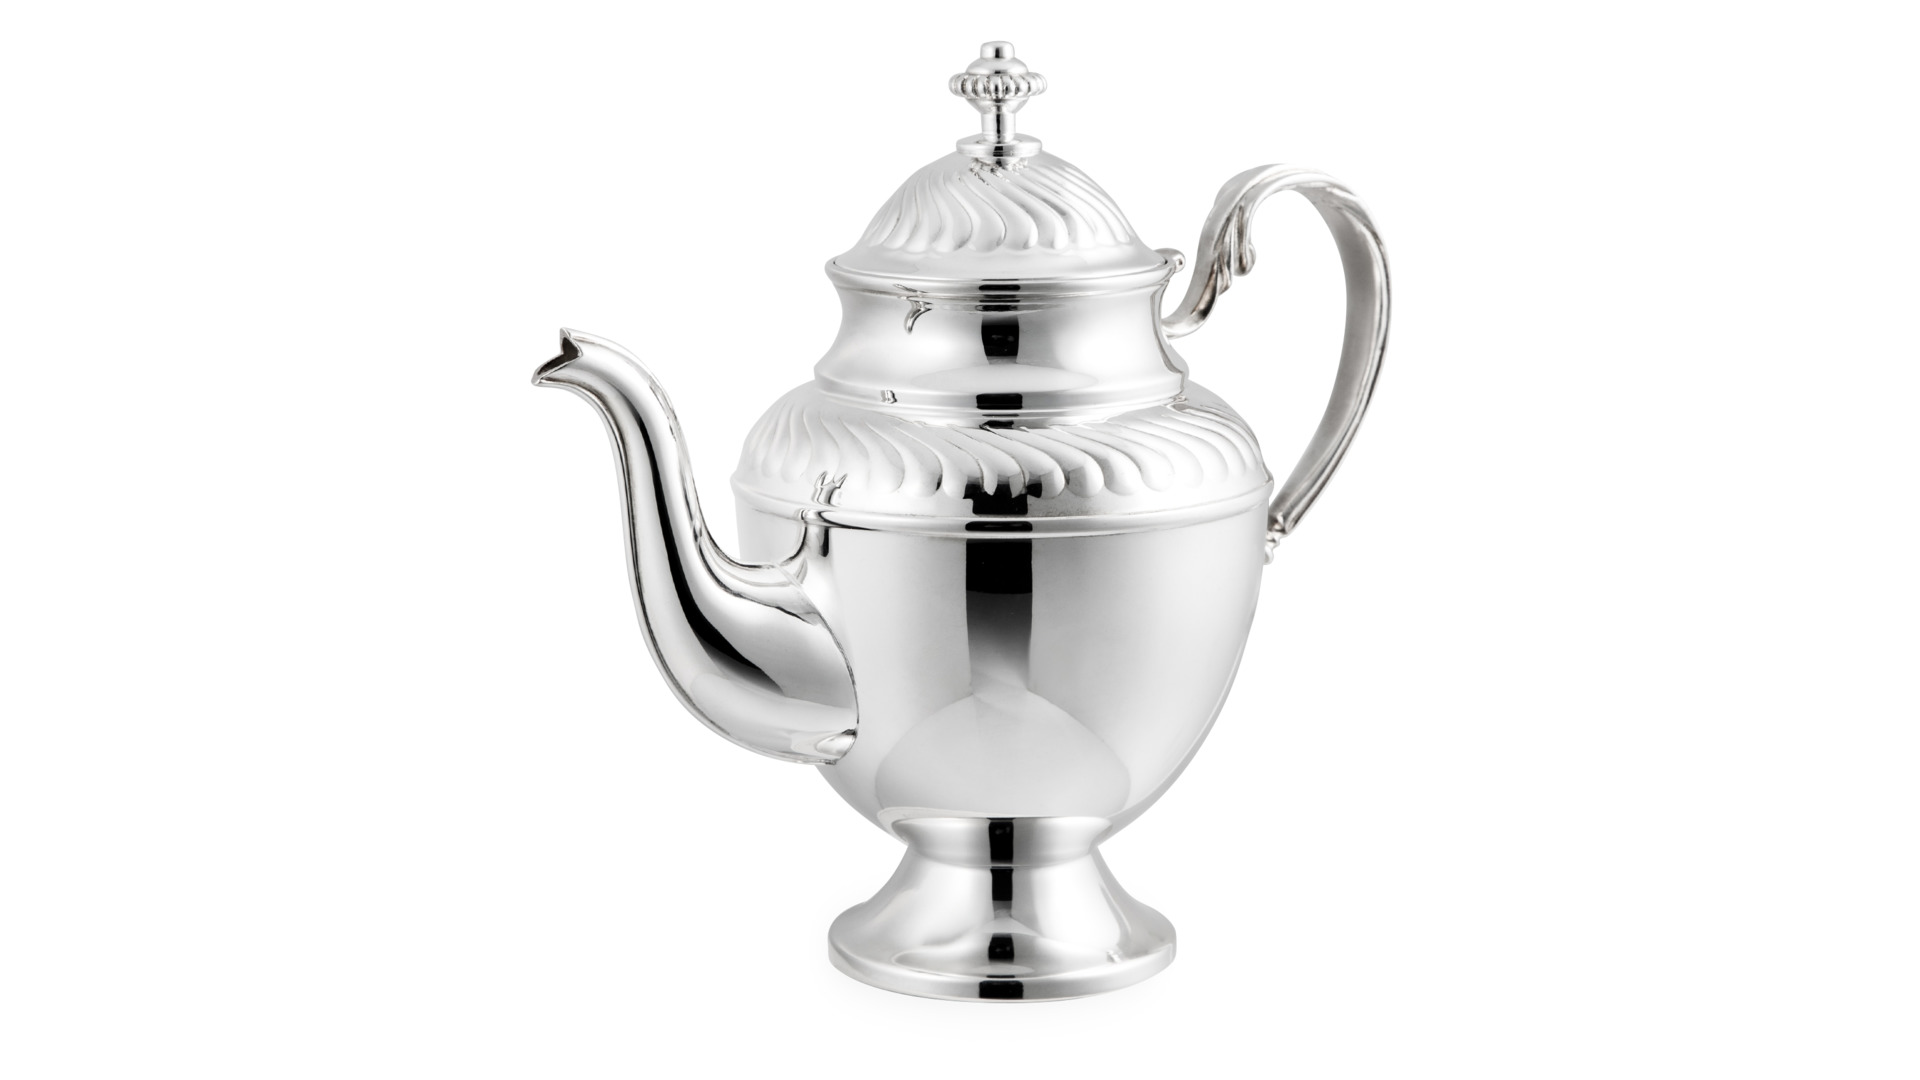 Чайник заварочный Мстерский ювелир 434,2 г, серебро 925